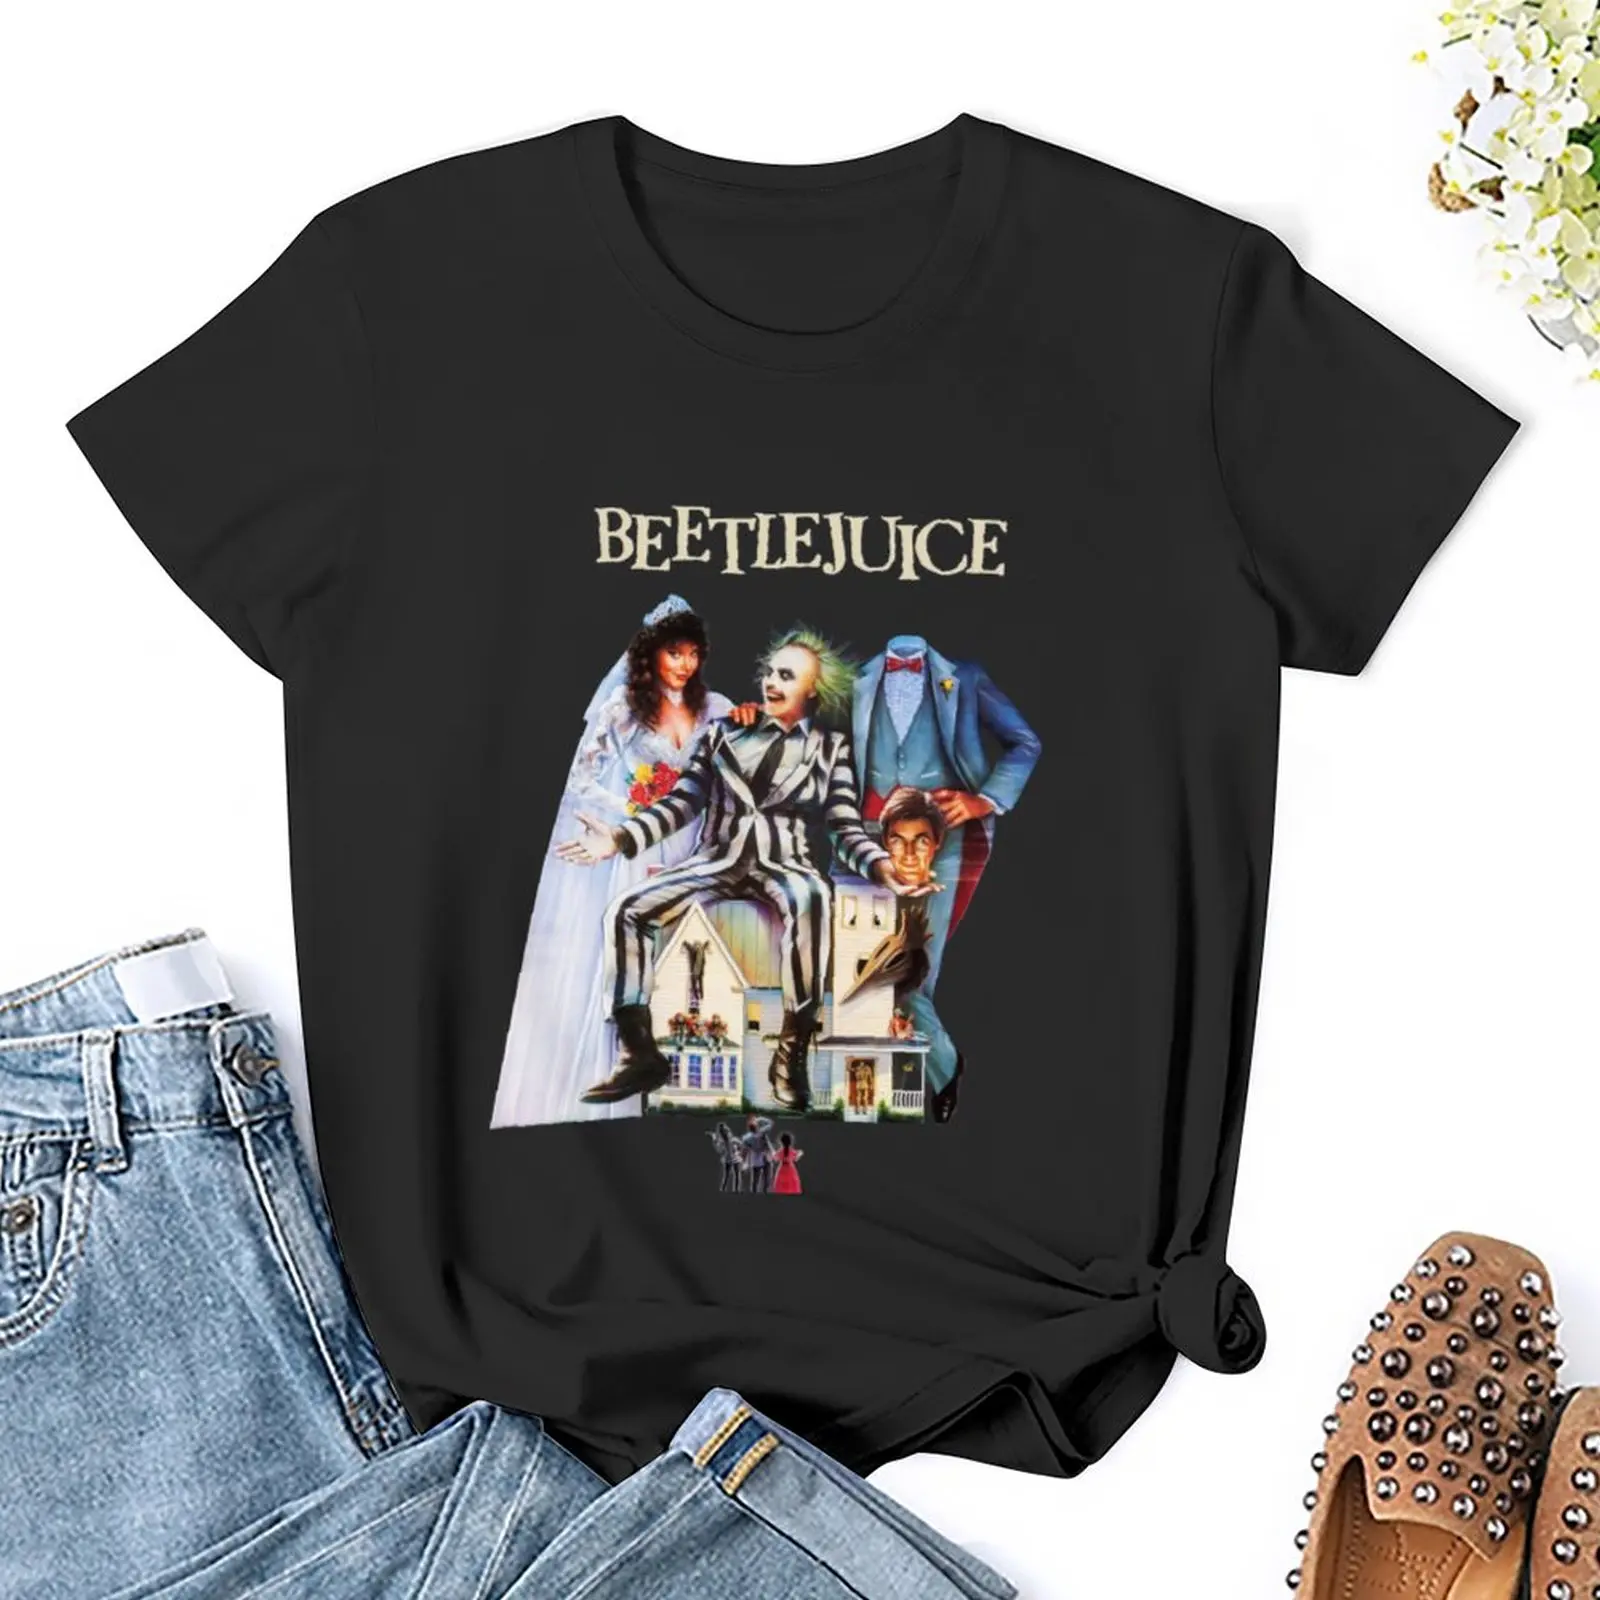 Топы с футболками Beetlejuice, футболки оверсайз, графическая футболка, однотонные футболки для женщин . ' - ' . 2